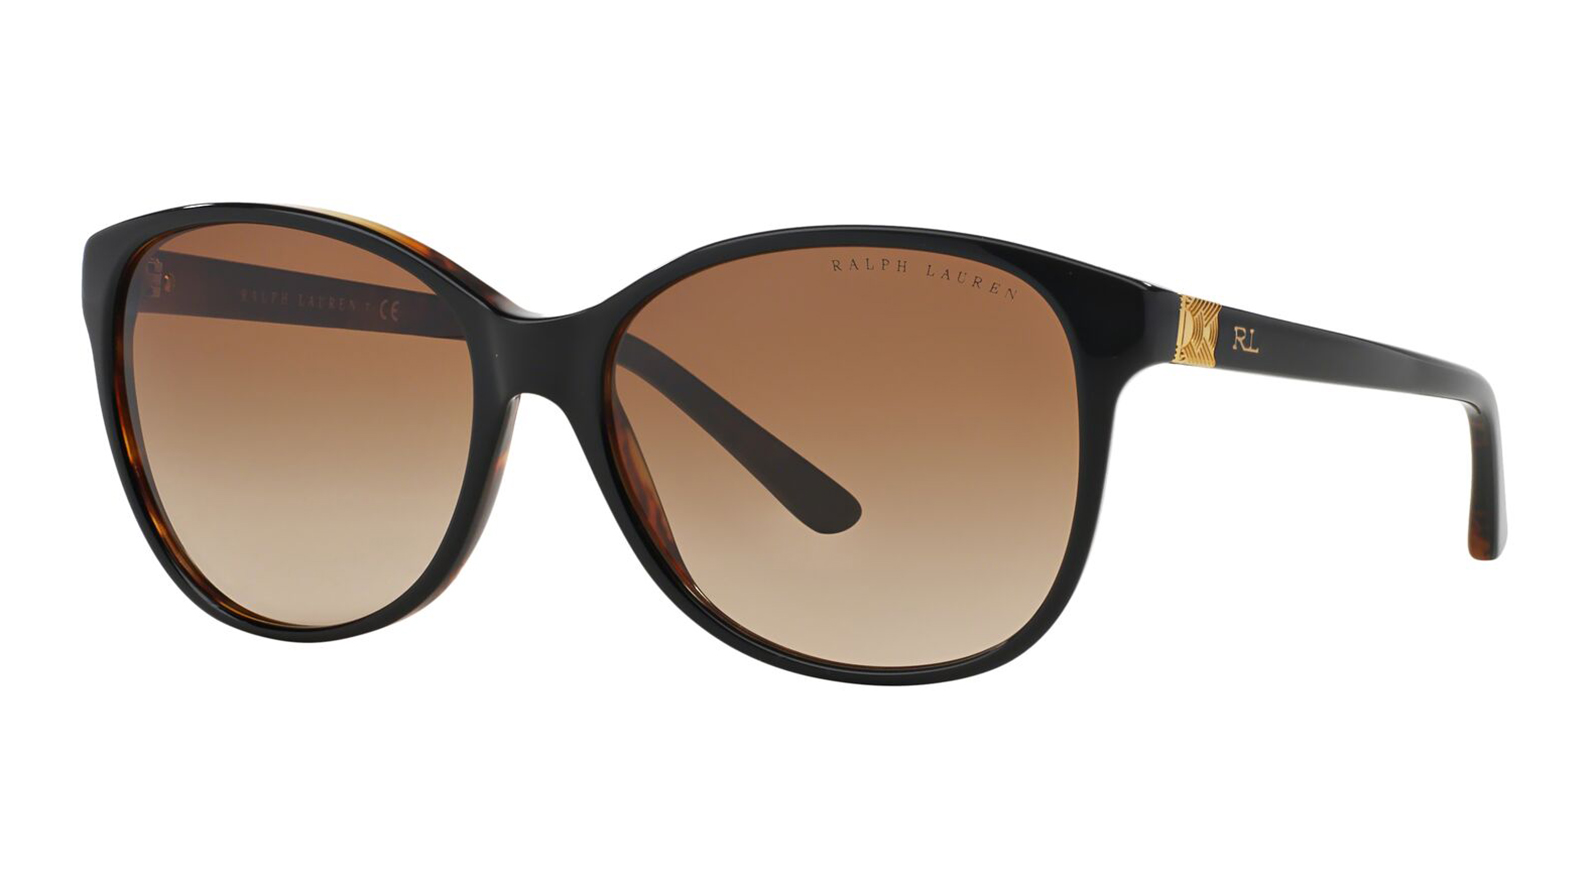 Ralph Lauren 8116 526013 классические квадратные мужчины поляризованные солнцезащитные очки спортивные поляризованные женские зеркала моды